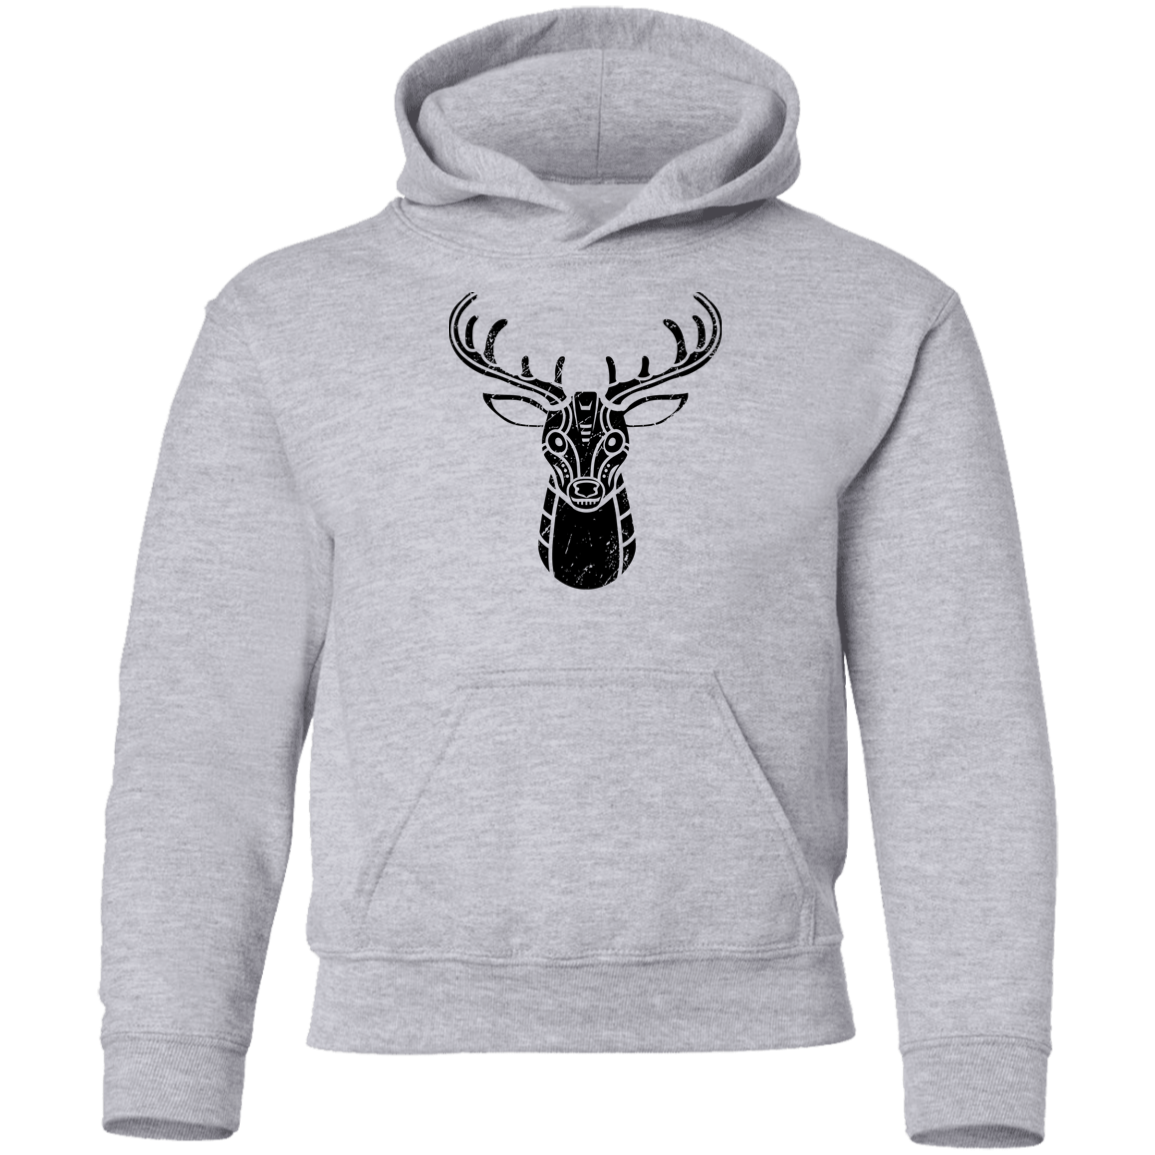 Black Distressed Emblem Hoodies for Kids (Deer/Stag)